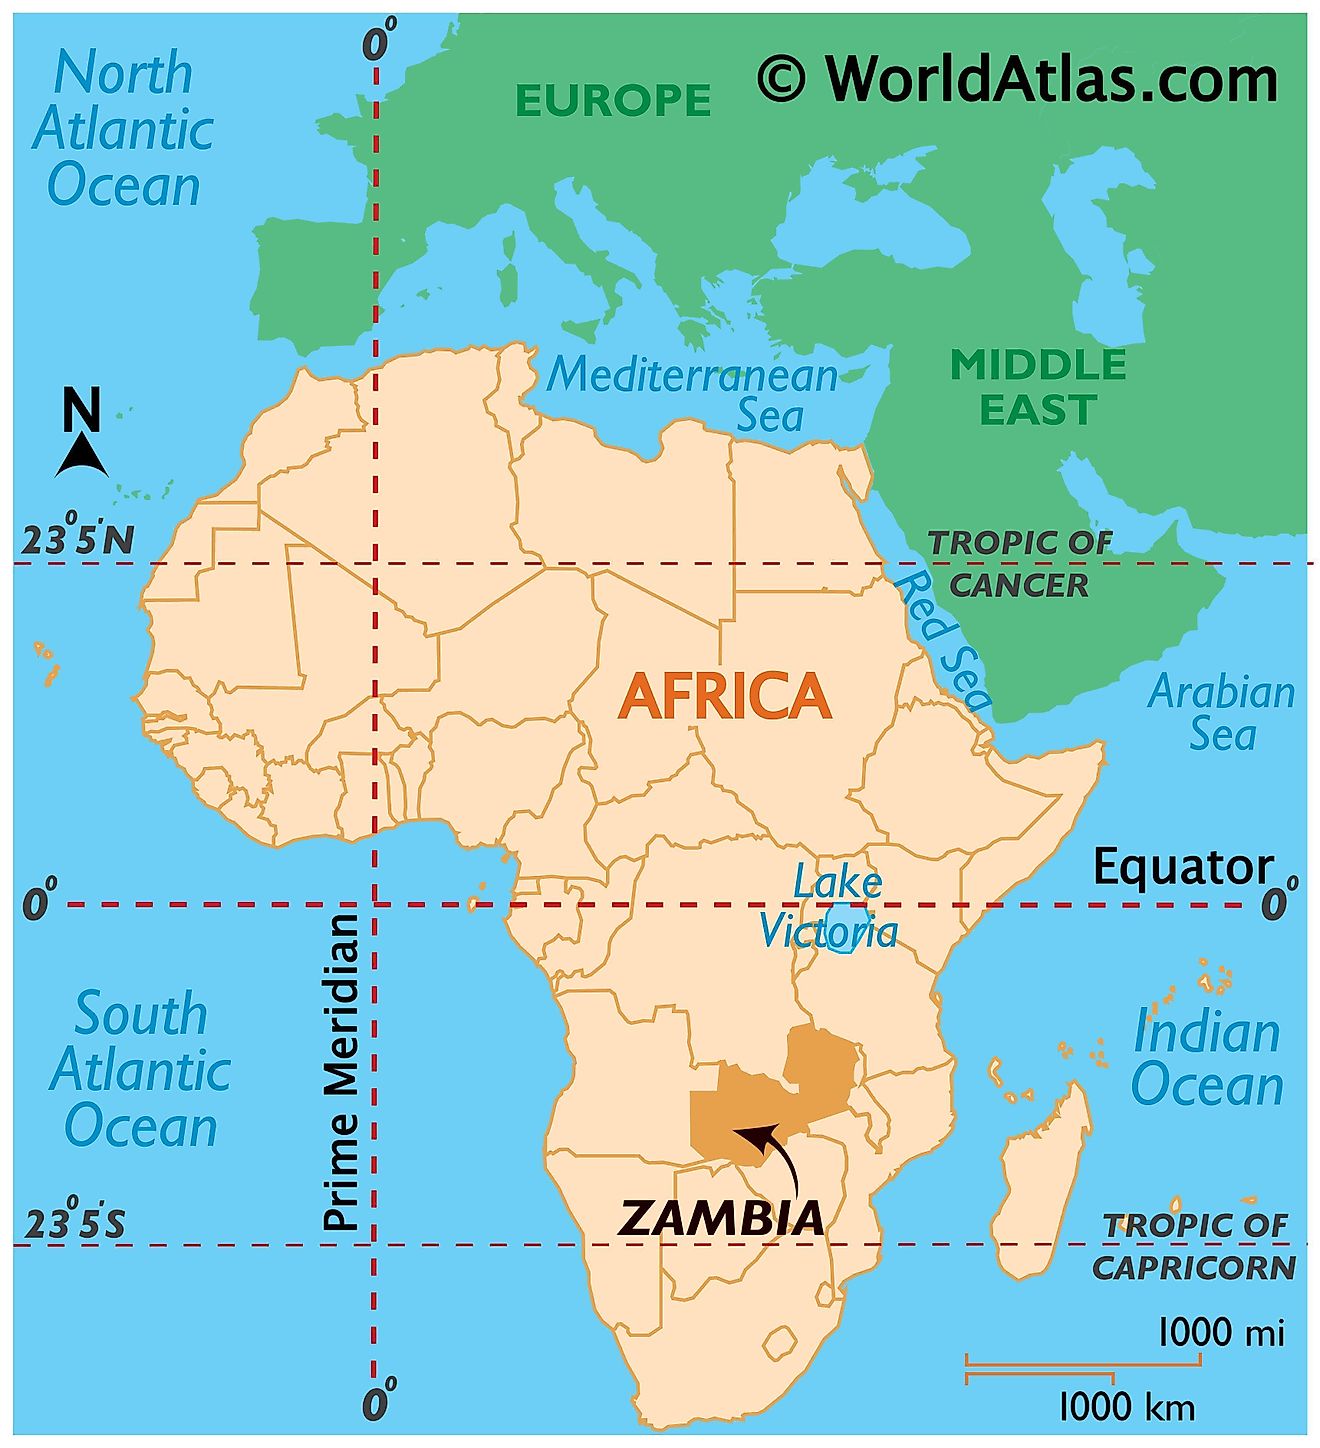 zambia map africa